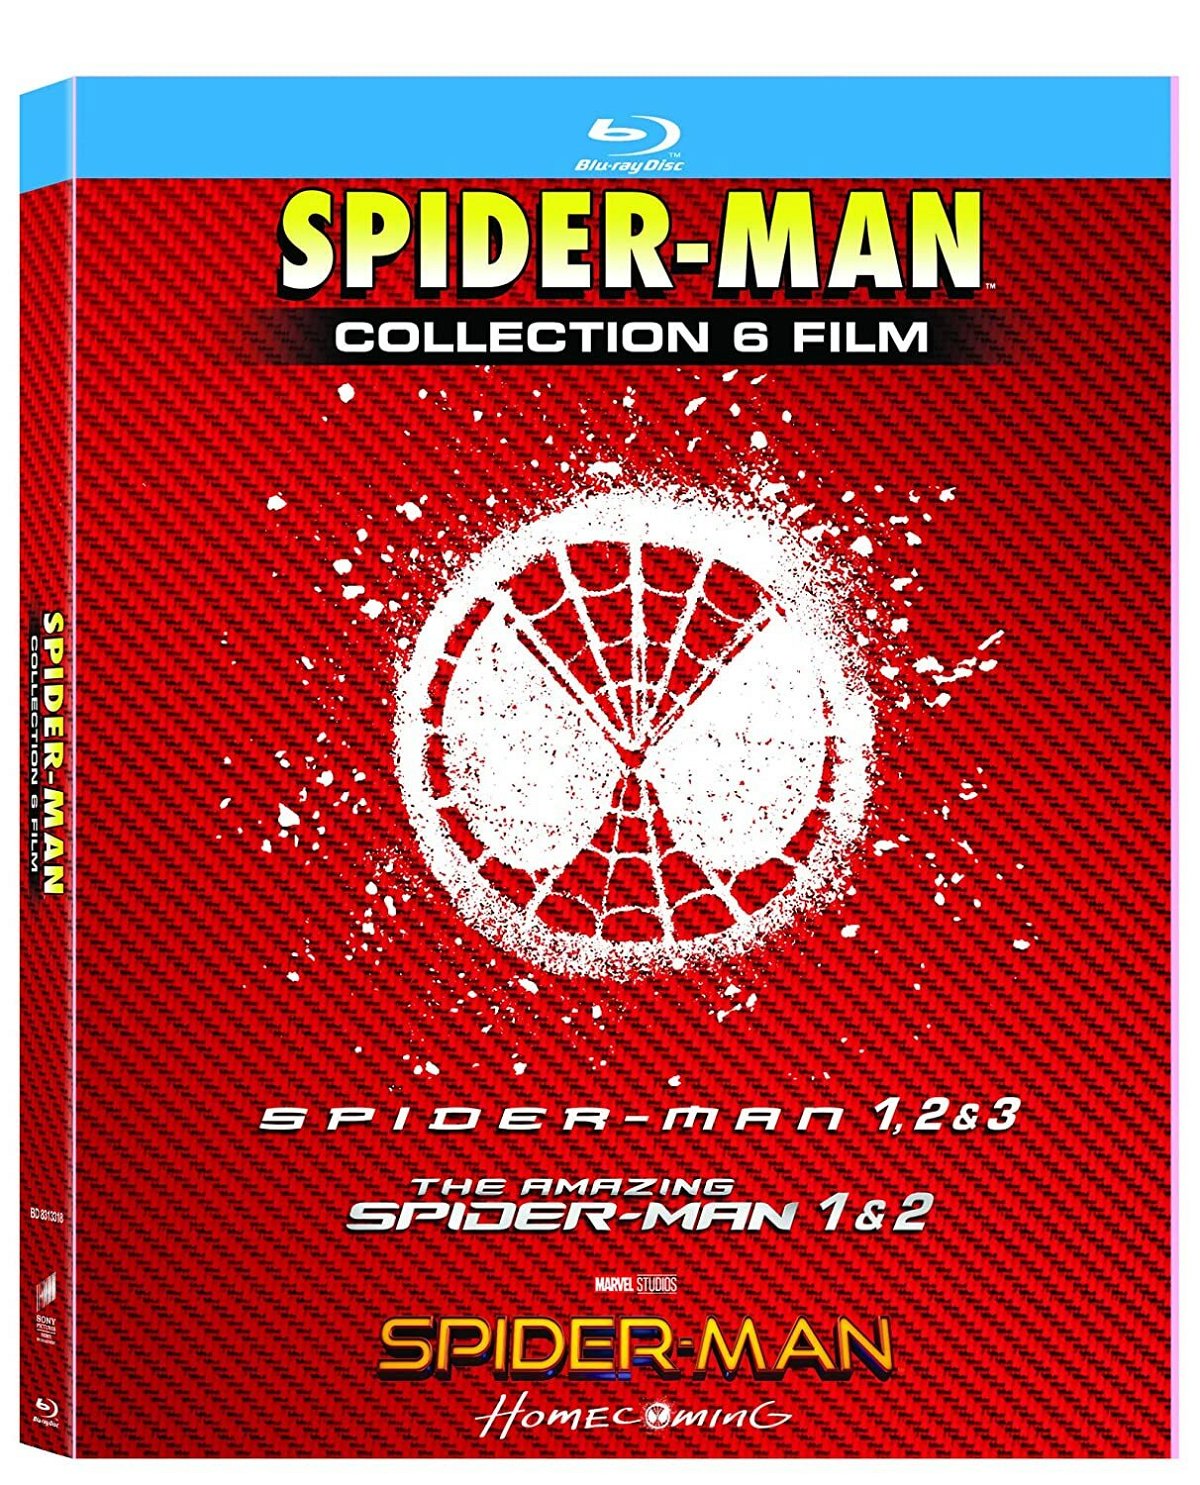 Copertina del cofanetto Blu-ray di Spider-Man